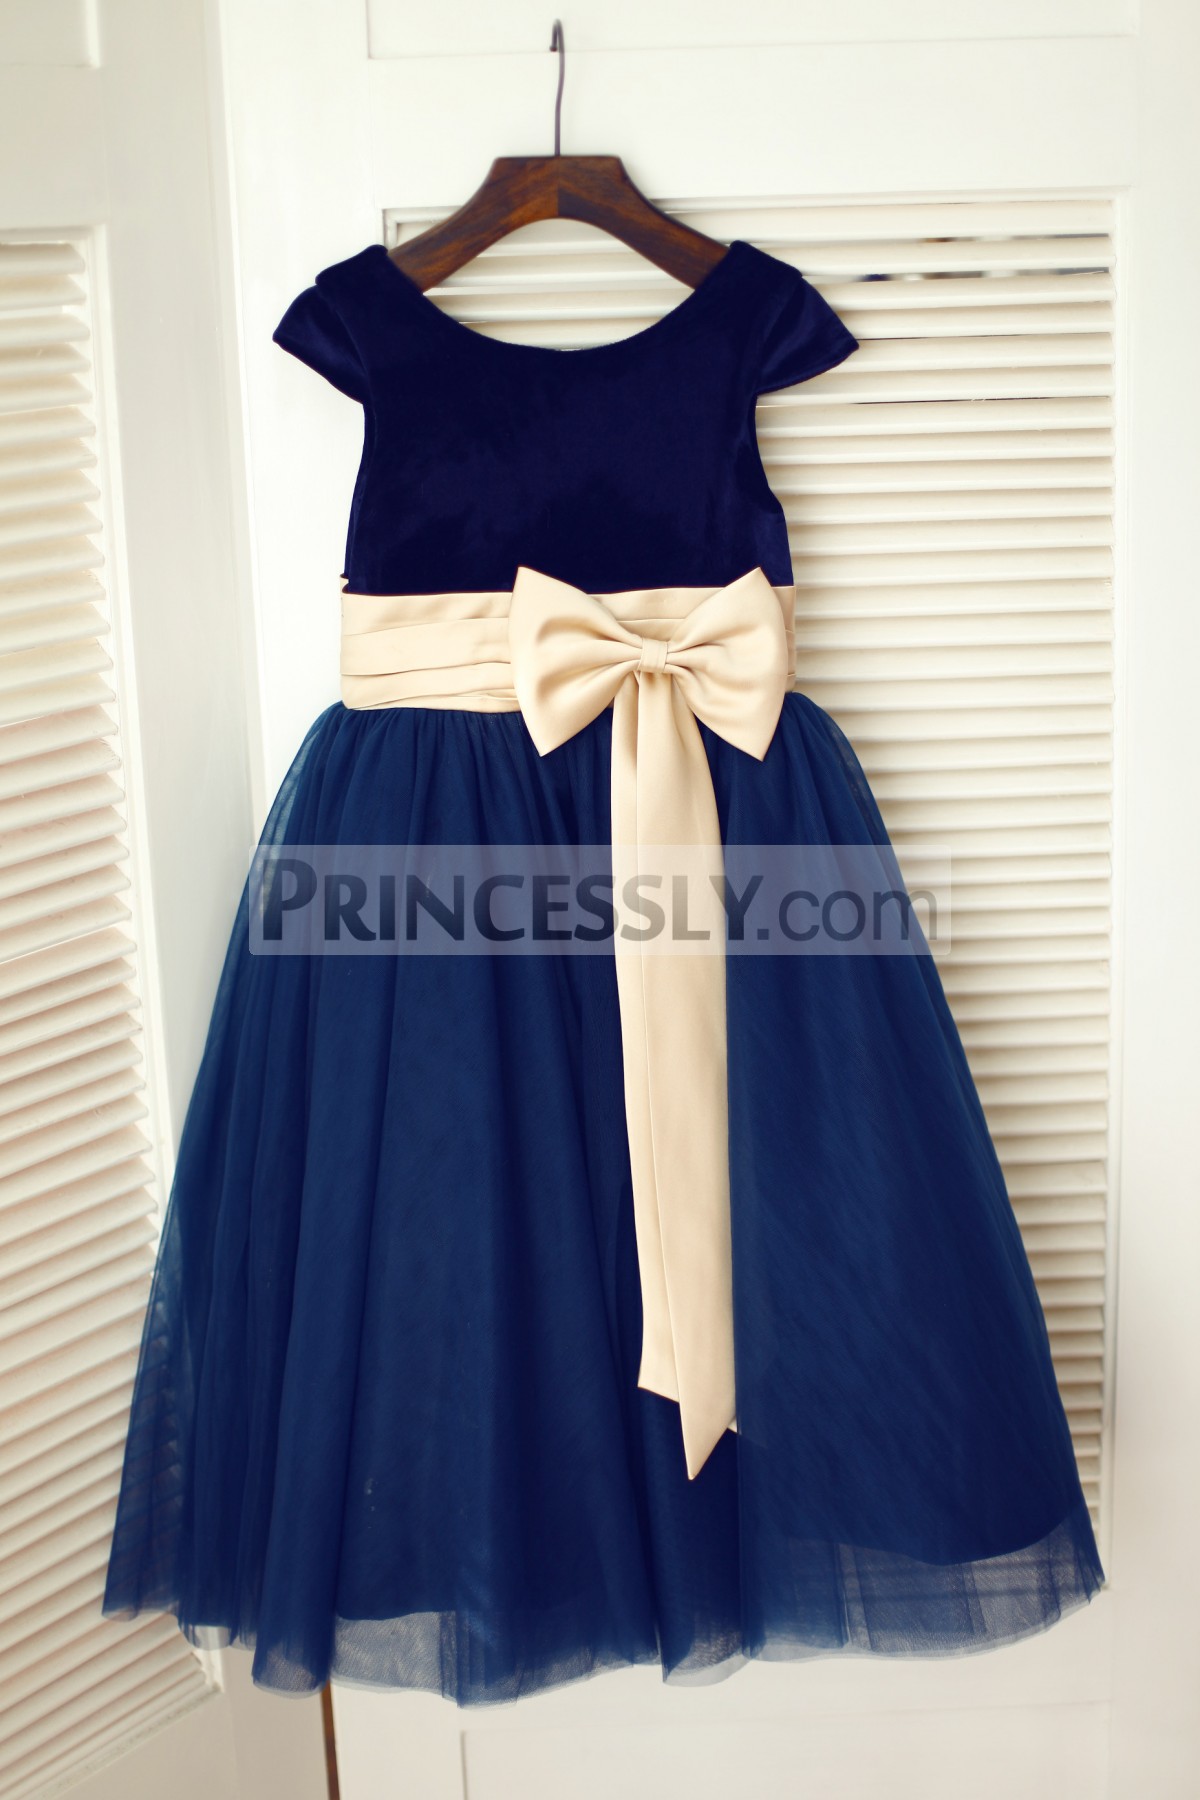 Princessly.com-K1003337 Navy Blue Velvet Tulle Cap Sleeve Wedding Flower Girl Dress with Champagne Sash\Bow-31